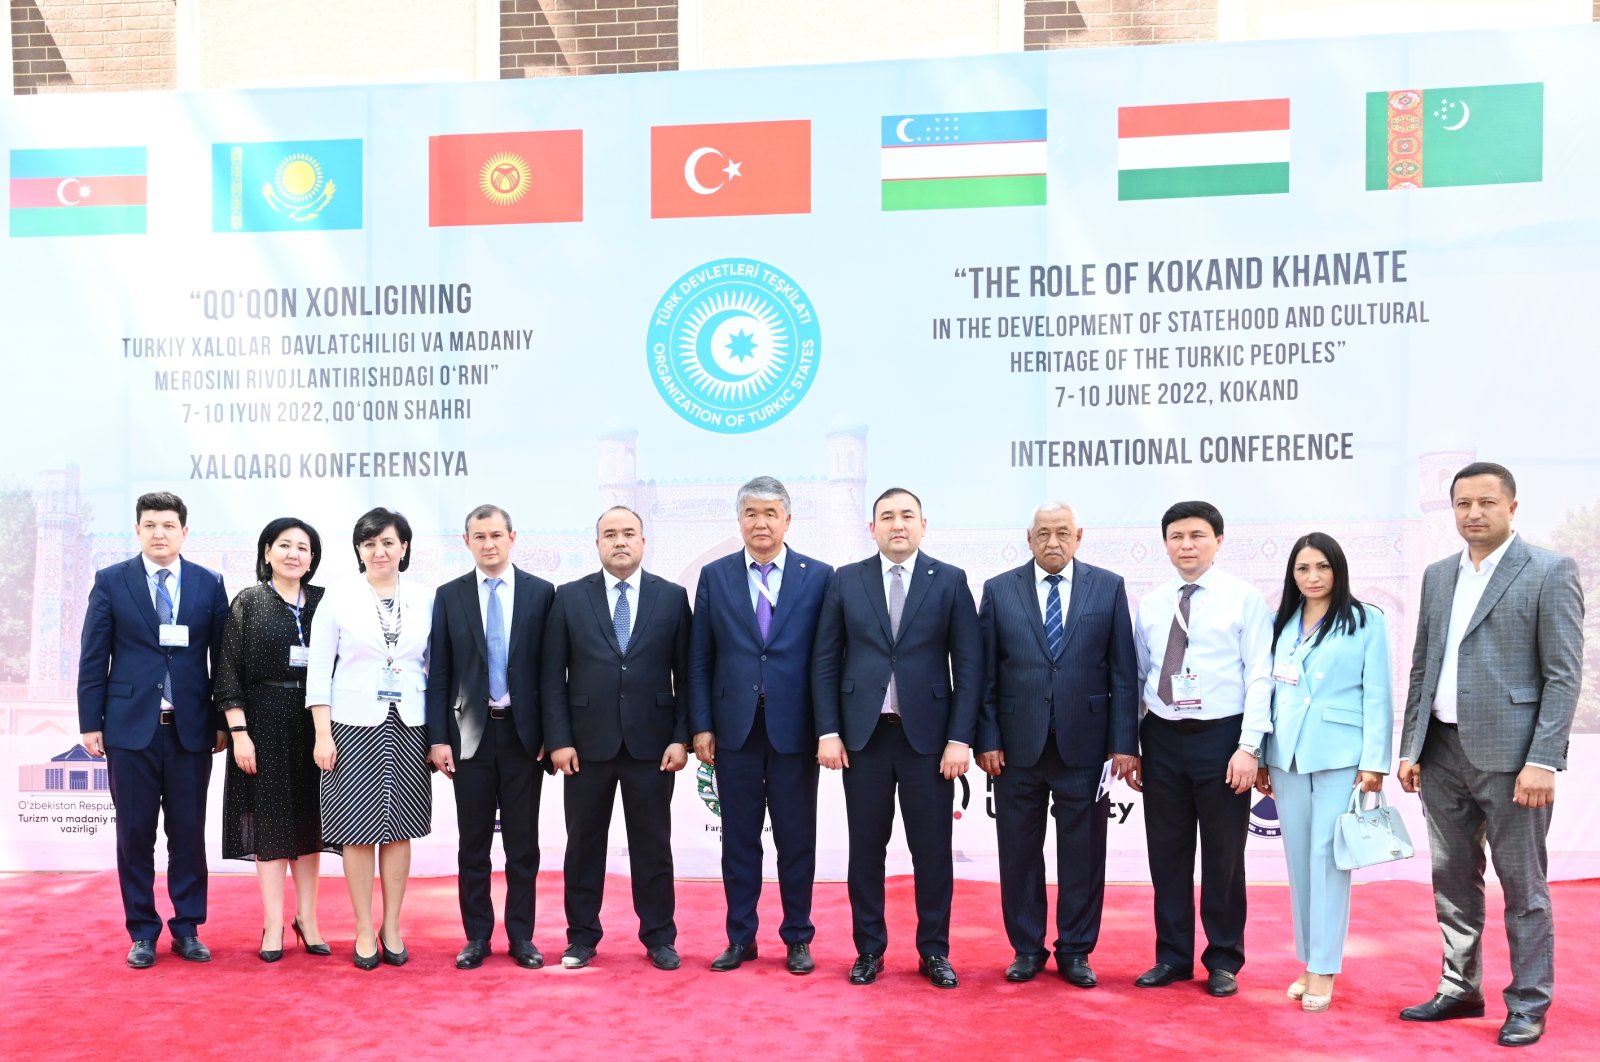 Uzbekistan menjadi tuan rumah konferensi internasional tentang khanat Asia Tengah